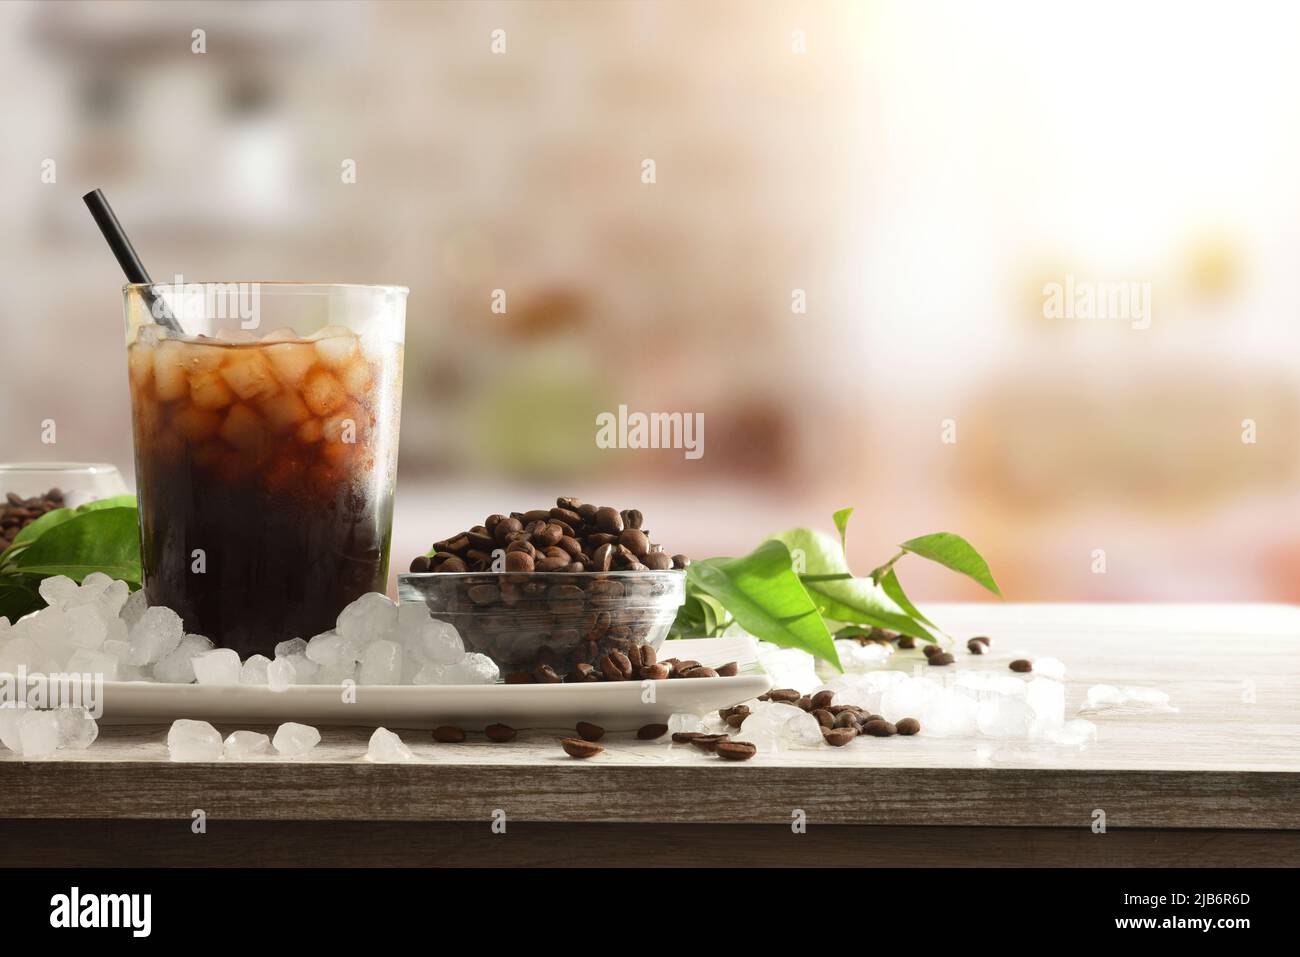 Présentation de café glacé sur un banc de cuisine avec des récipients pleins de grains de café et de glace pilée autour. Vue avant. Composition horizontale. Banque D'Images